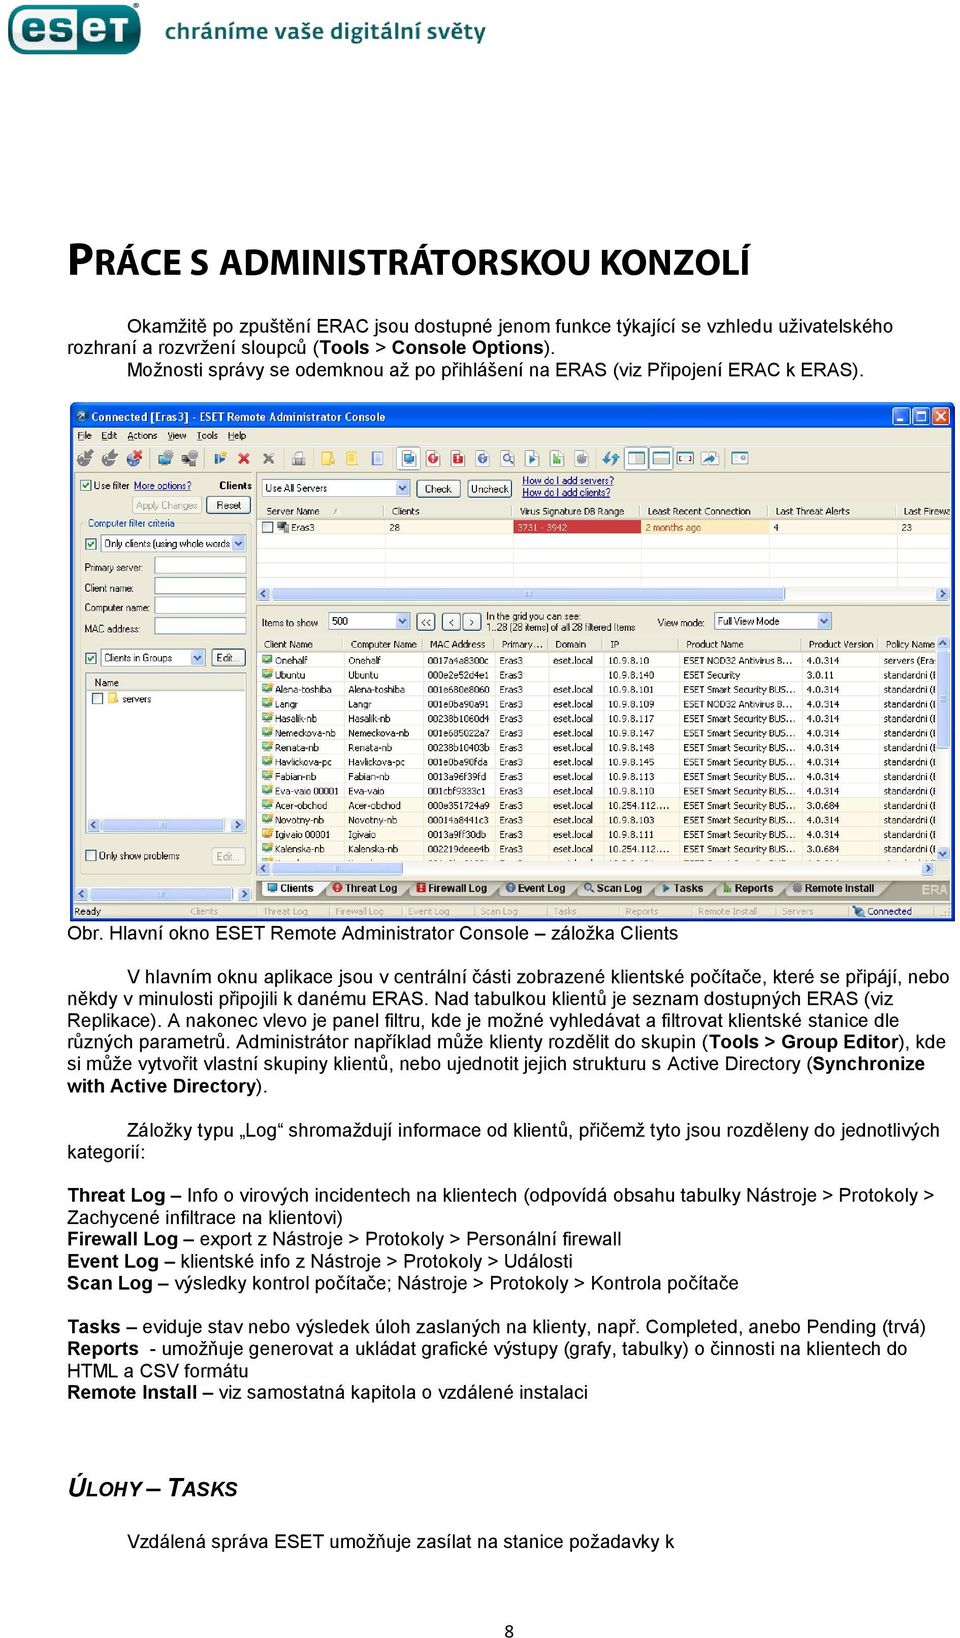 Hlavní okno ESET Remote Administrator Console záložka Clients V hlavním oknu aplikace jsou v centrální části zobrazené klientské počítače, které se připájí, nebo někdy v minulosti připojili k danému